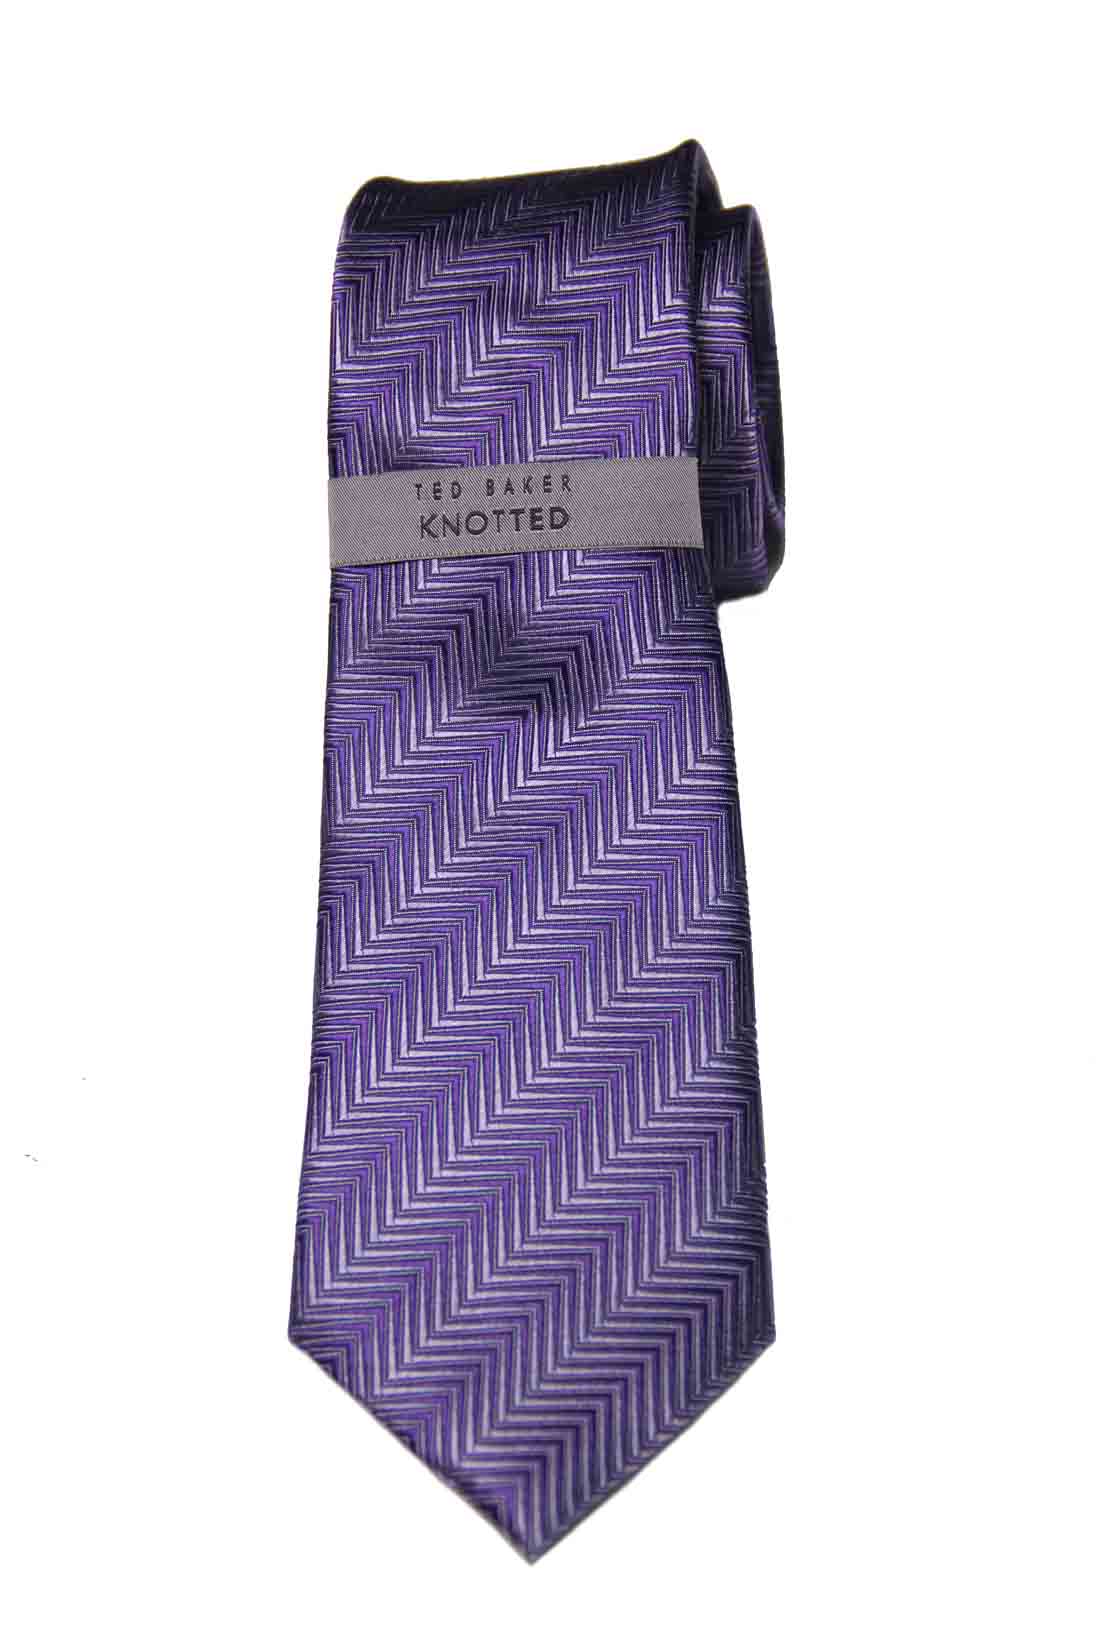 Ted Baker Fancy Woven Tie Purple Gray Geometric Silk Men's